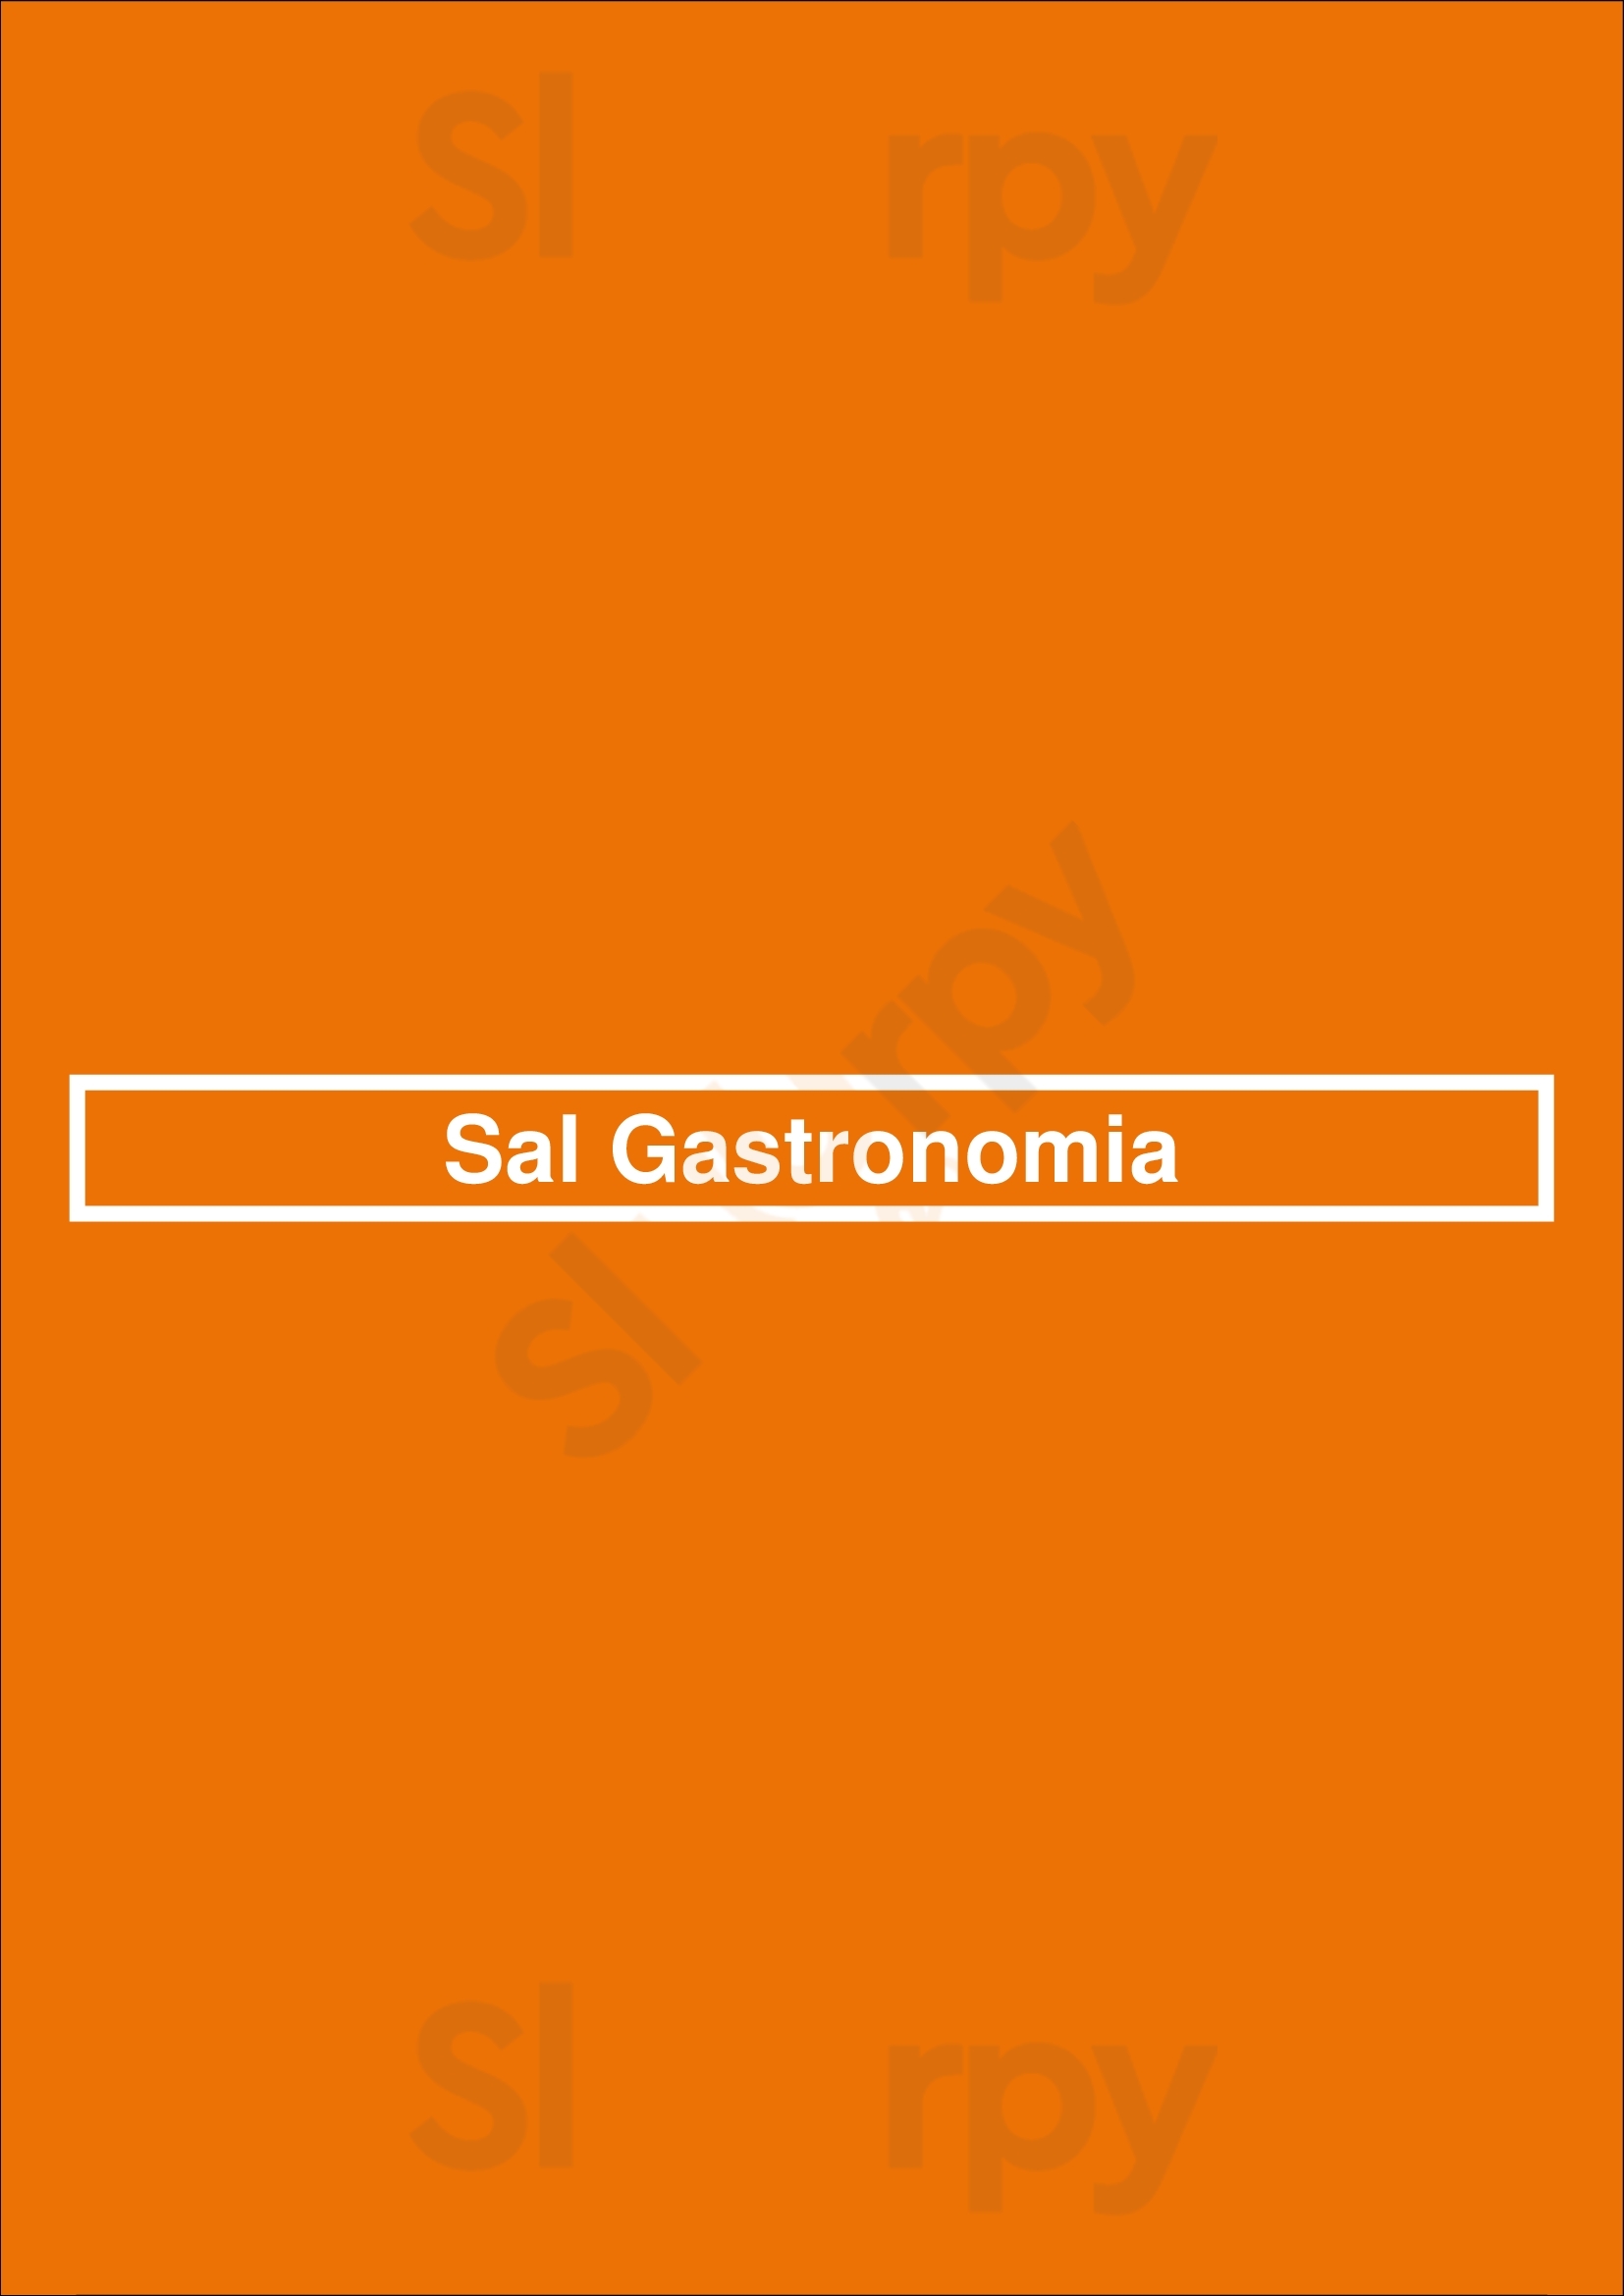 Sal Gastronomia - Cidade Jardim São Paulo Menu - 1